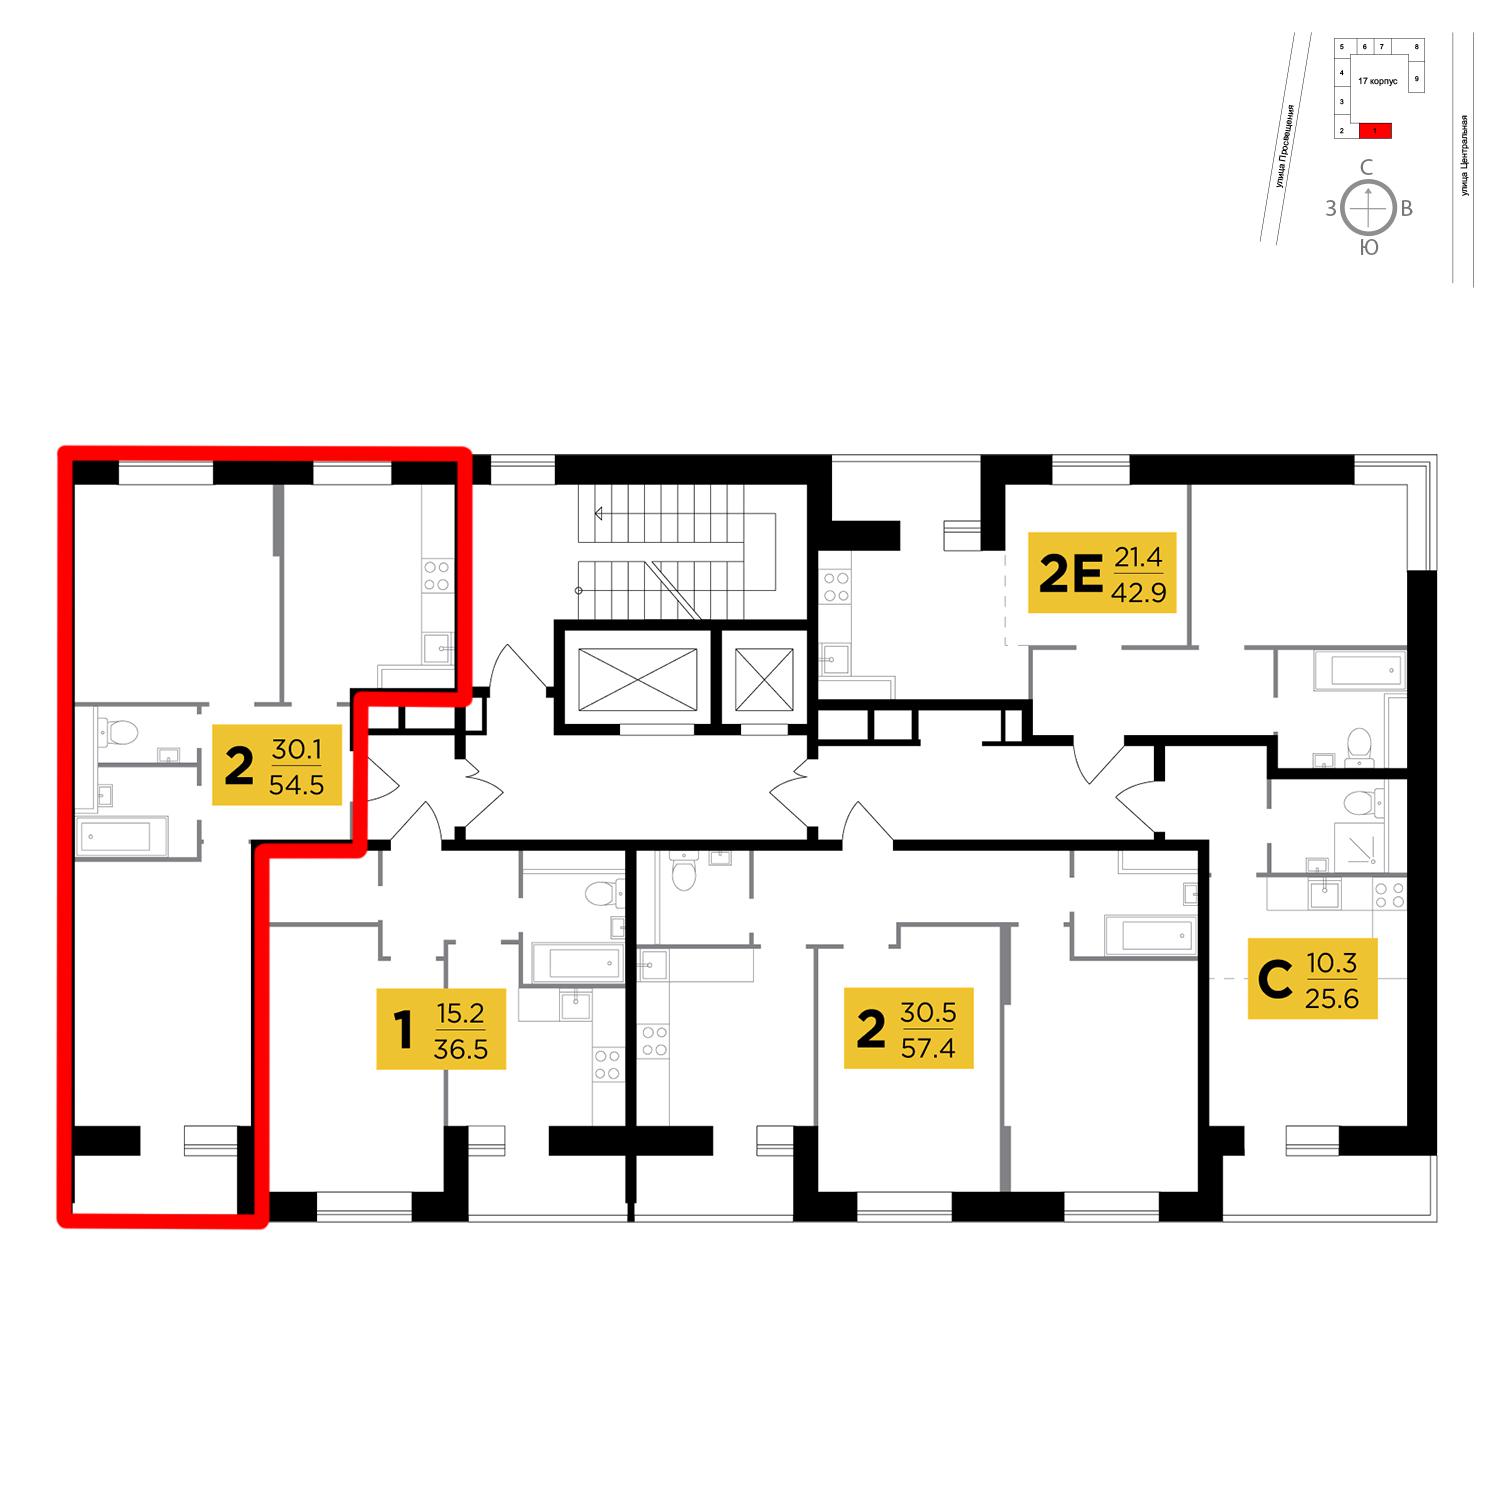 Продаётся 2-комнатная квартира в новостройке 54.5 кв.м. этаж 11/16 за 4 497 885 руб 